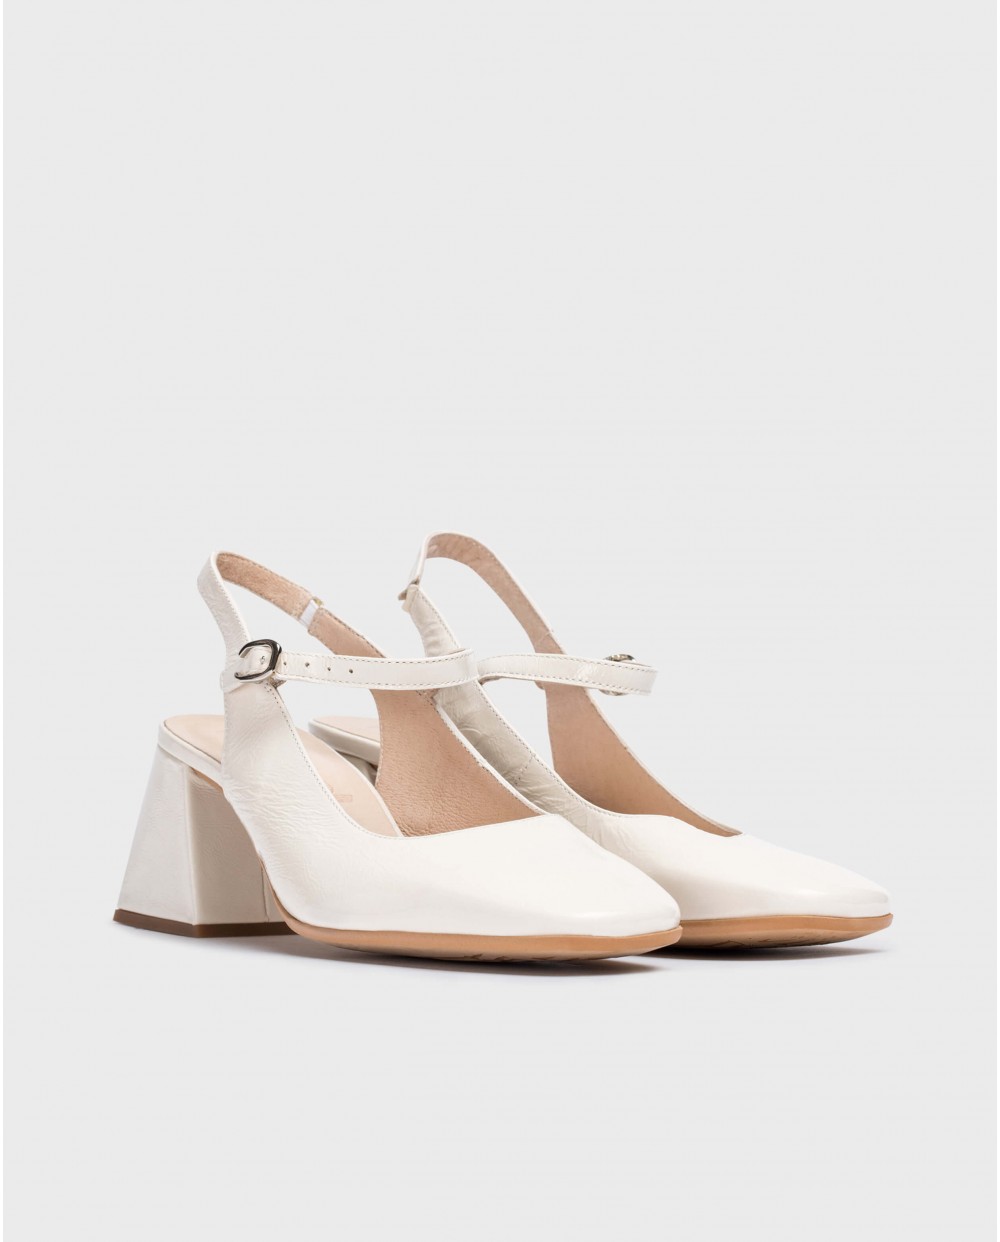 White Jane slingback sandals